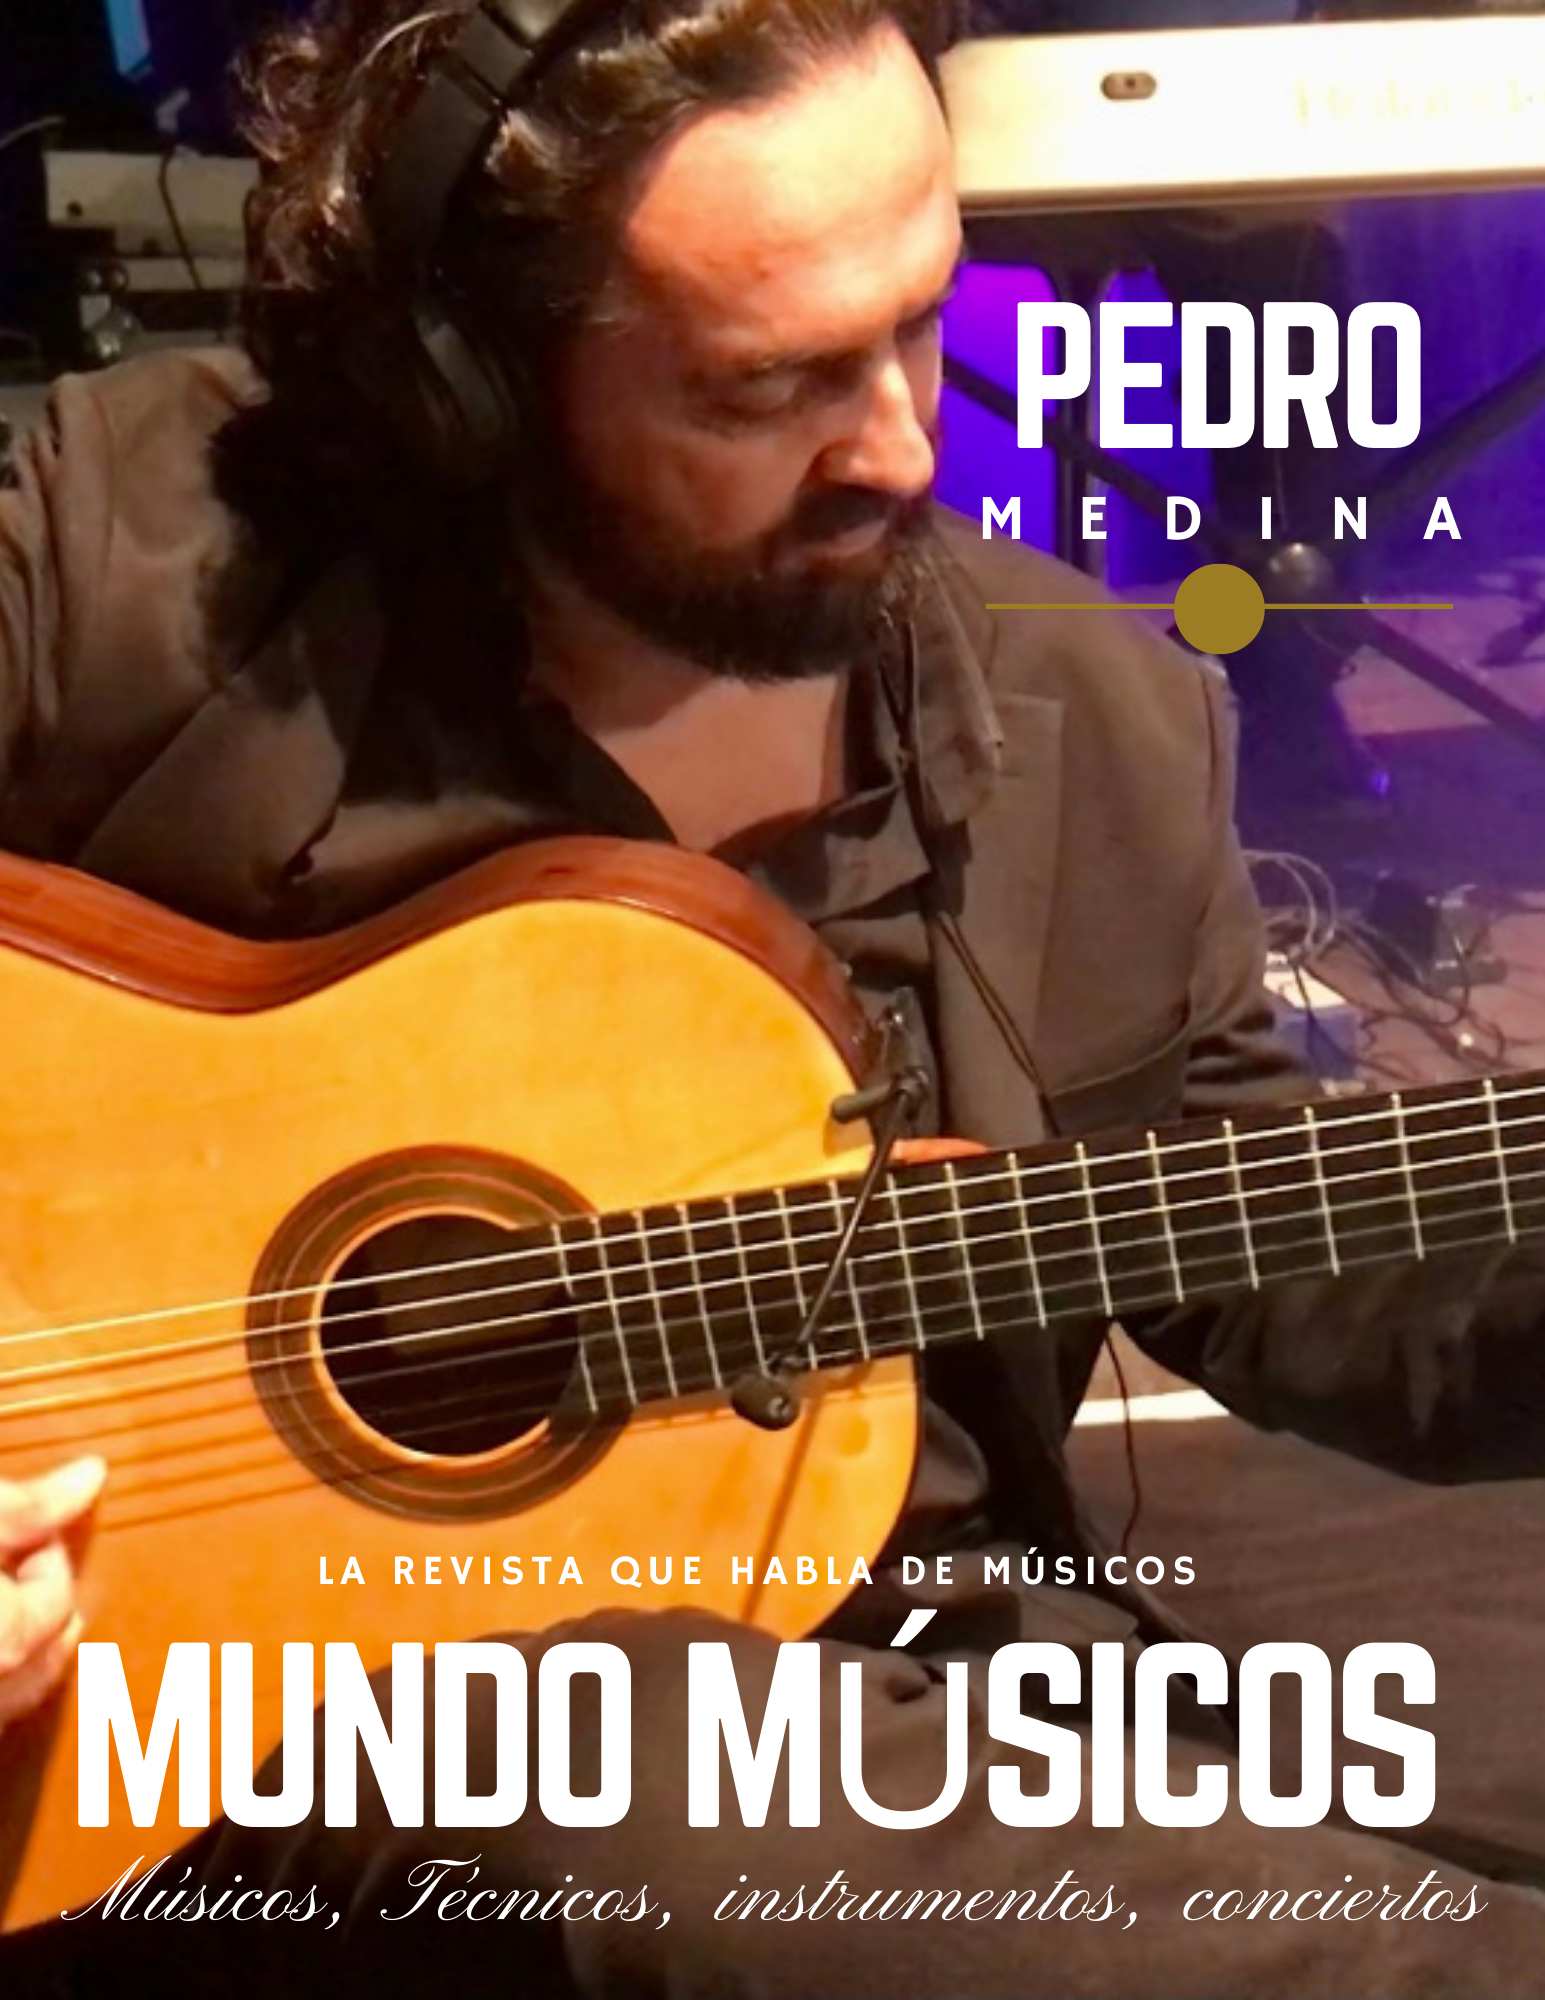 Pedro Medina guitarrista entrevista